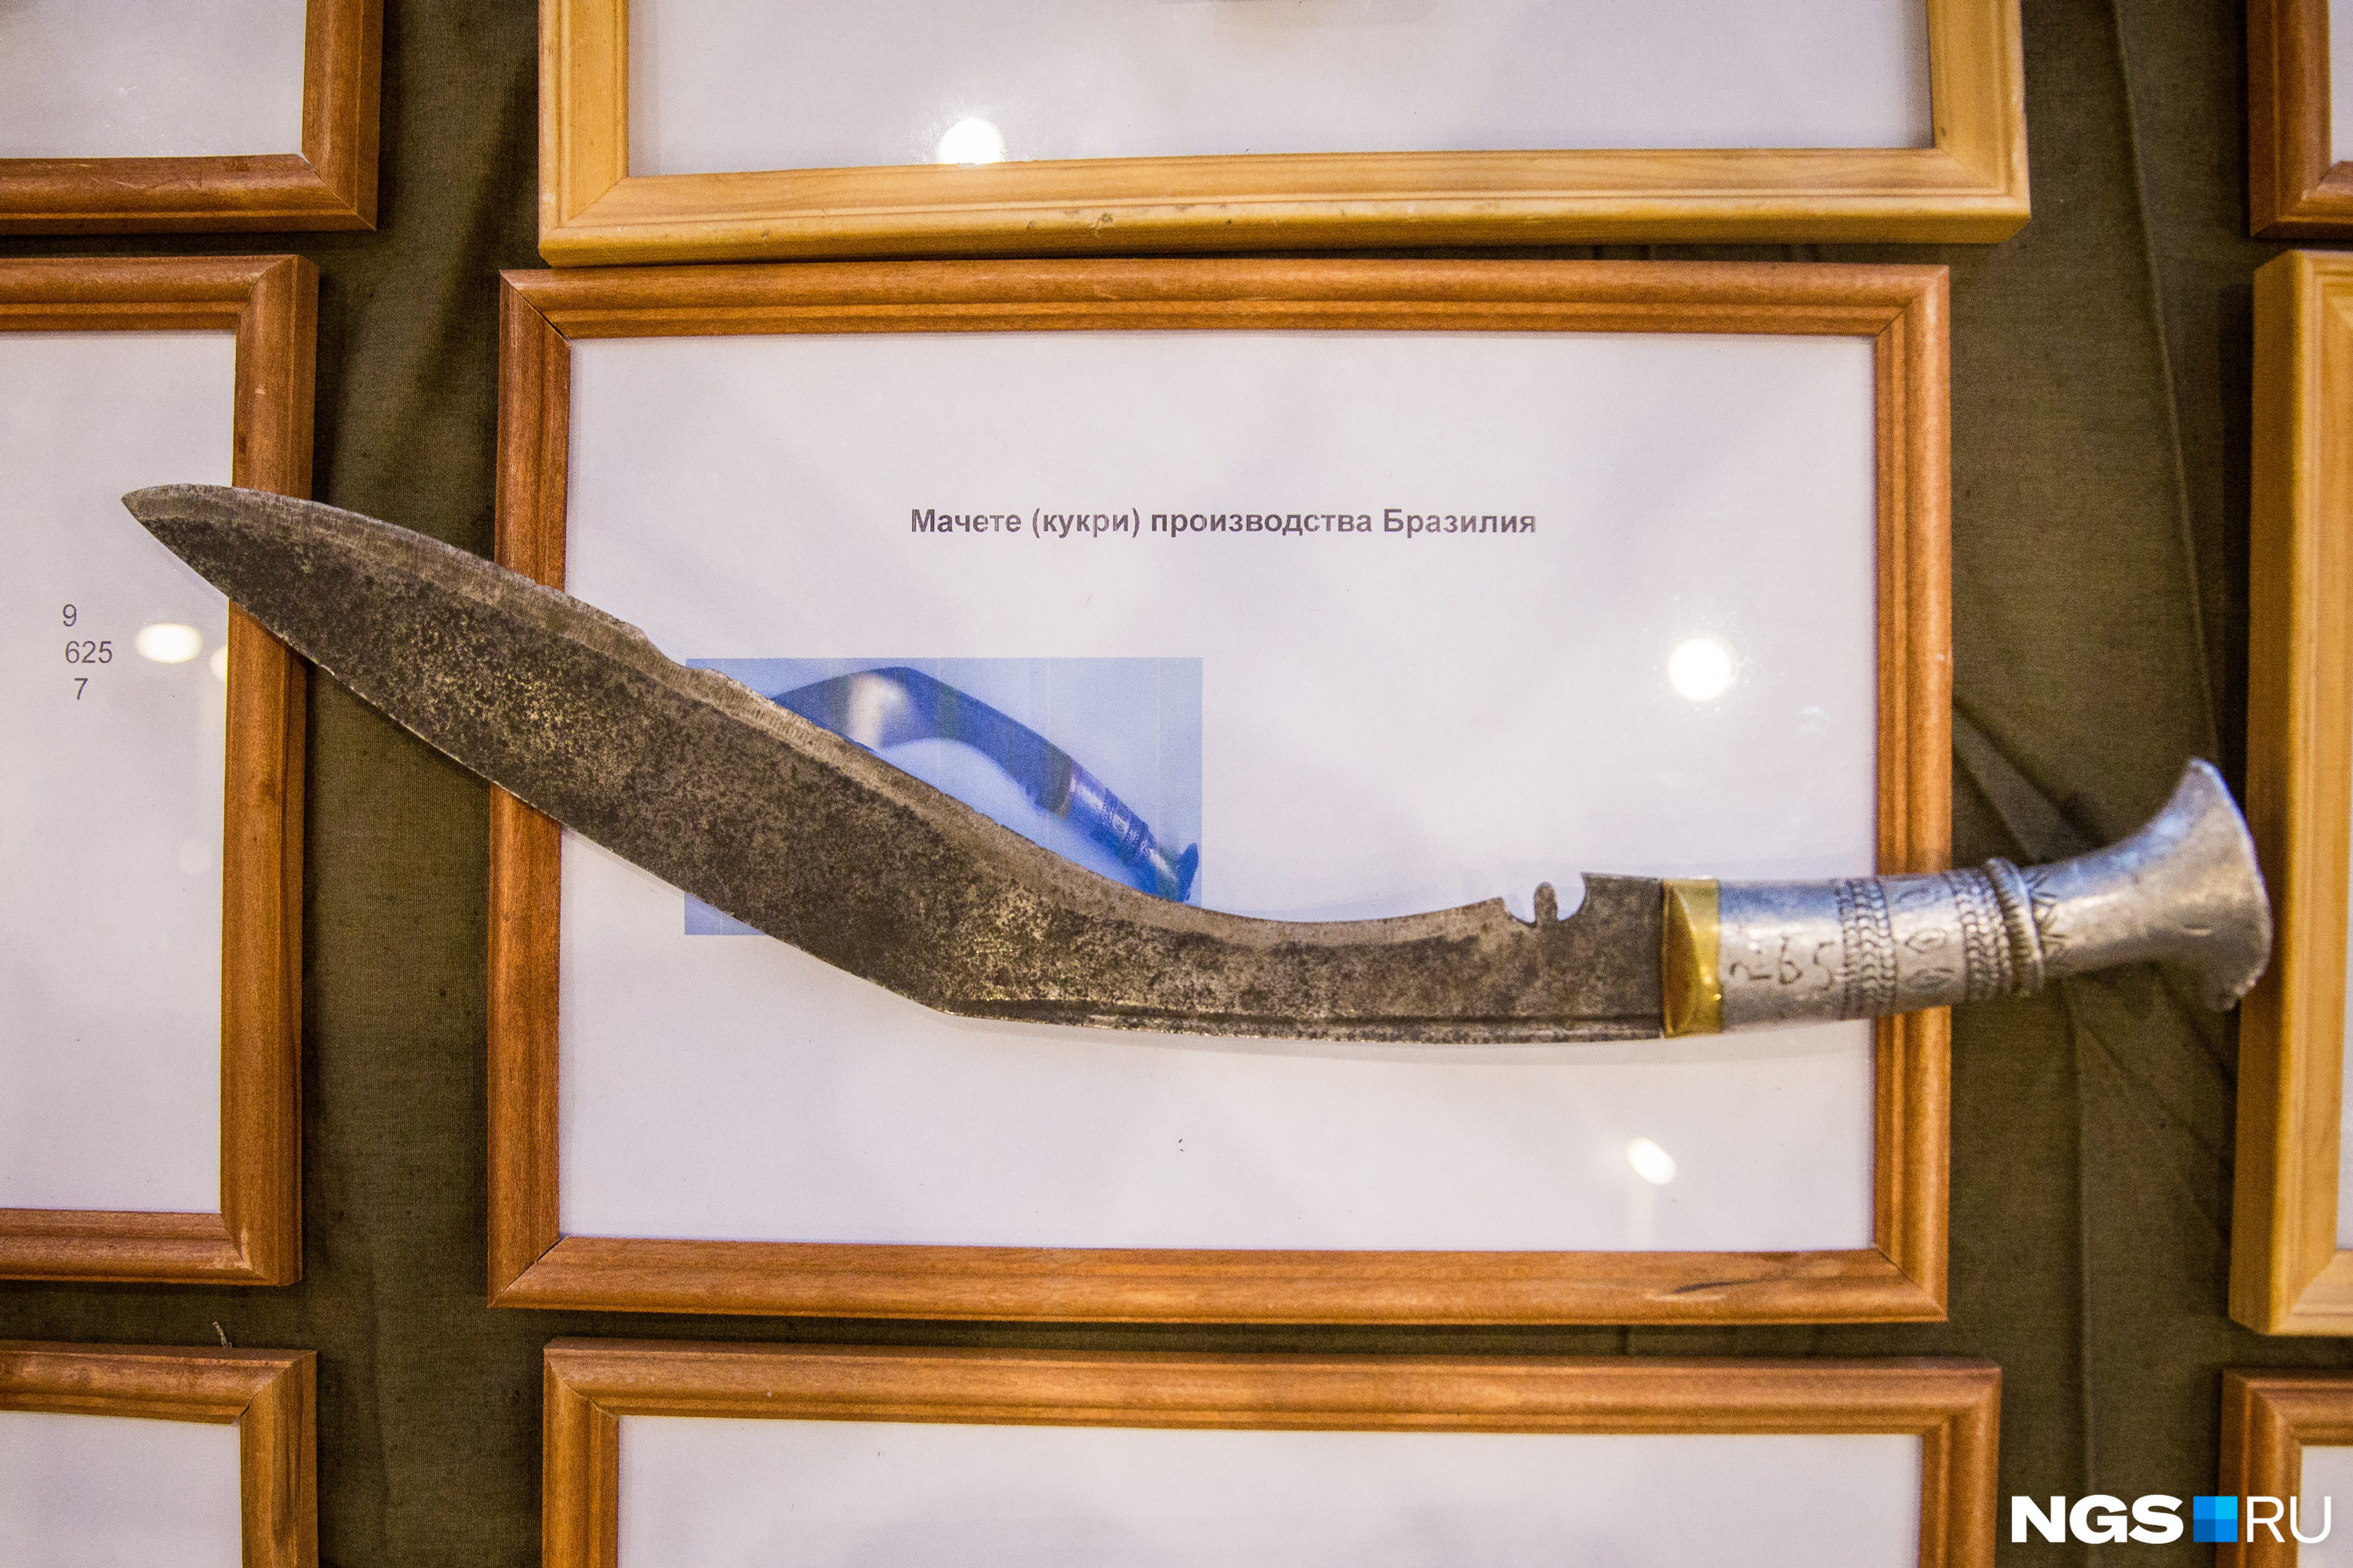 В коллекцию военных попали образцы холодного оружия — на фото нож кукри с изогнутым лезвием